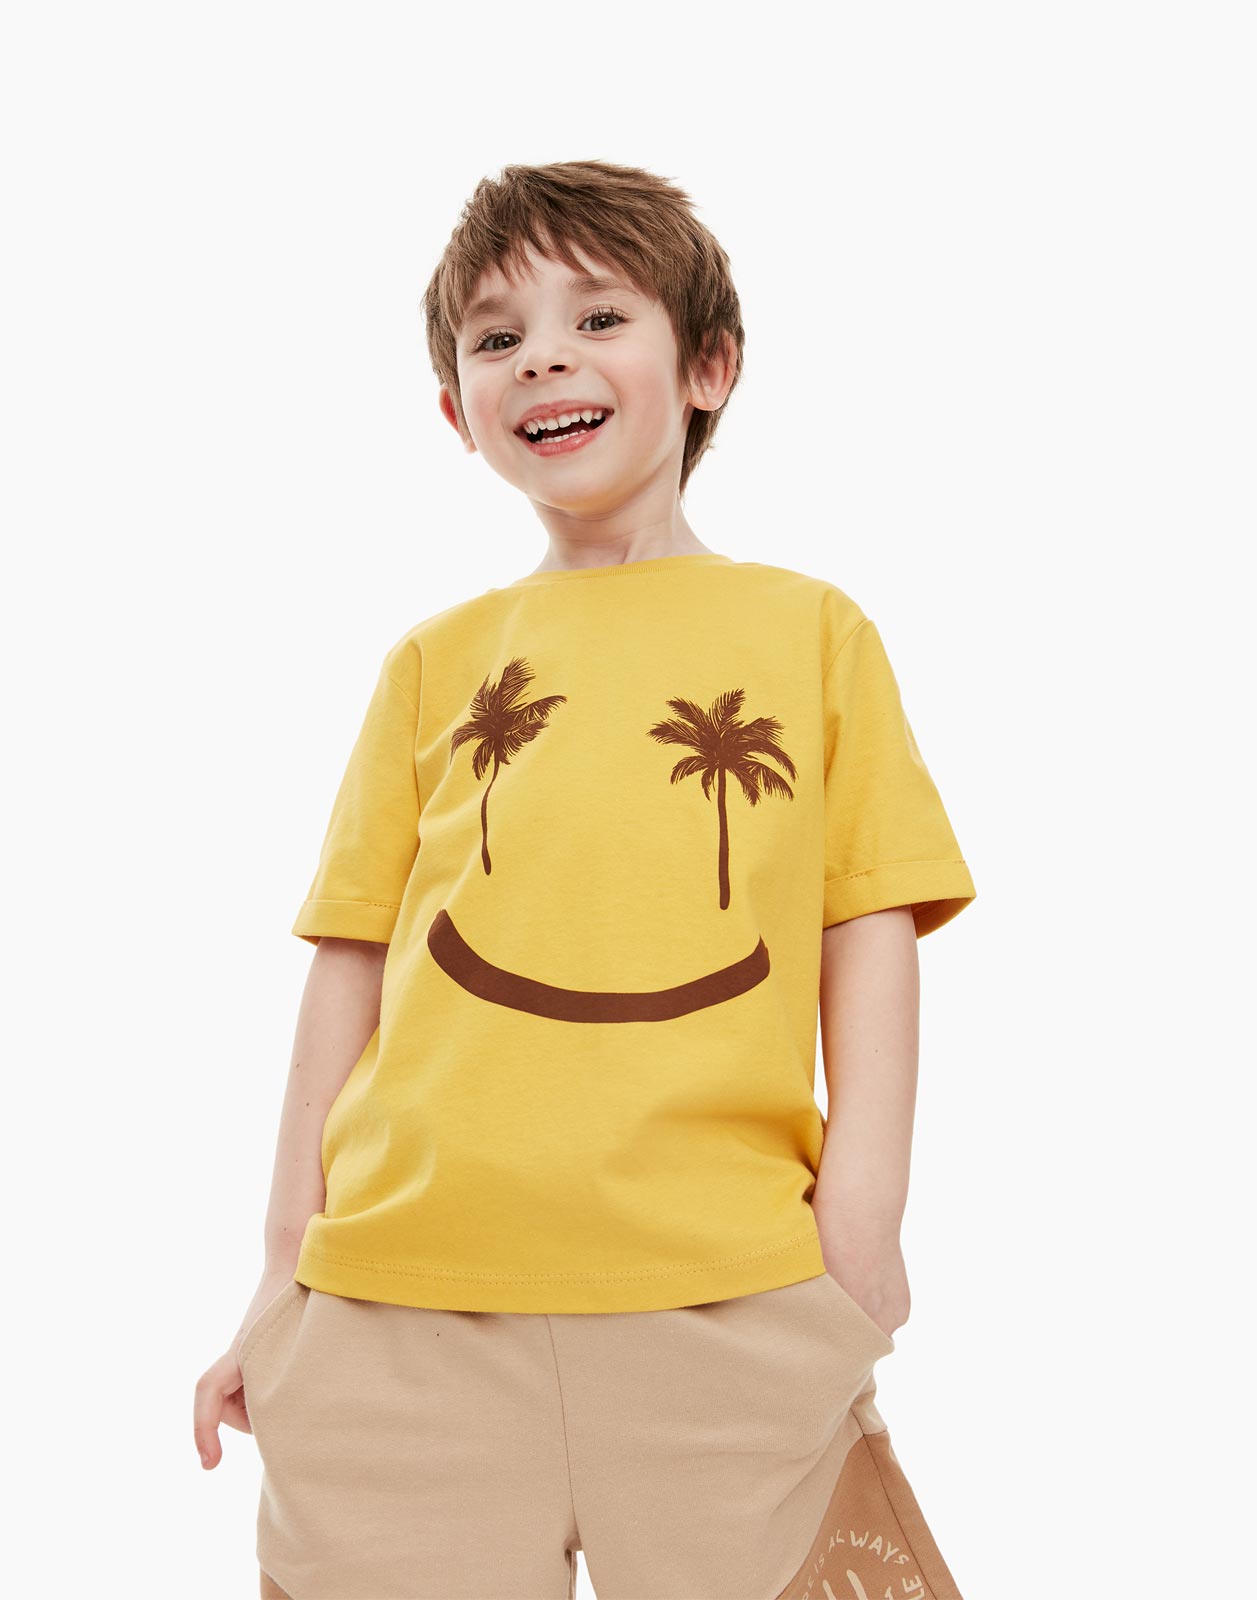 Горчичная футболка с пальмами для мальчика 4-5л/110